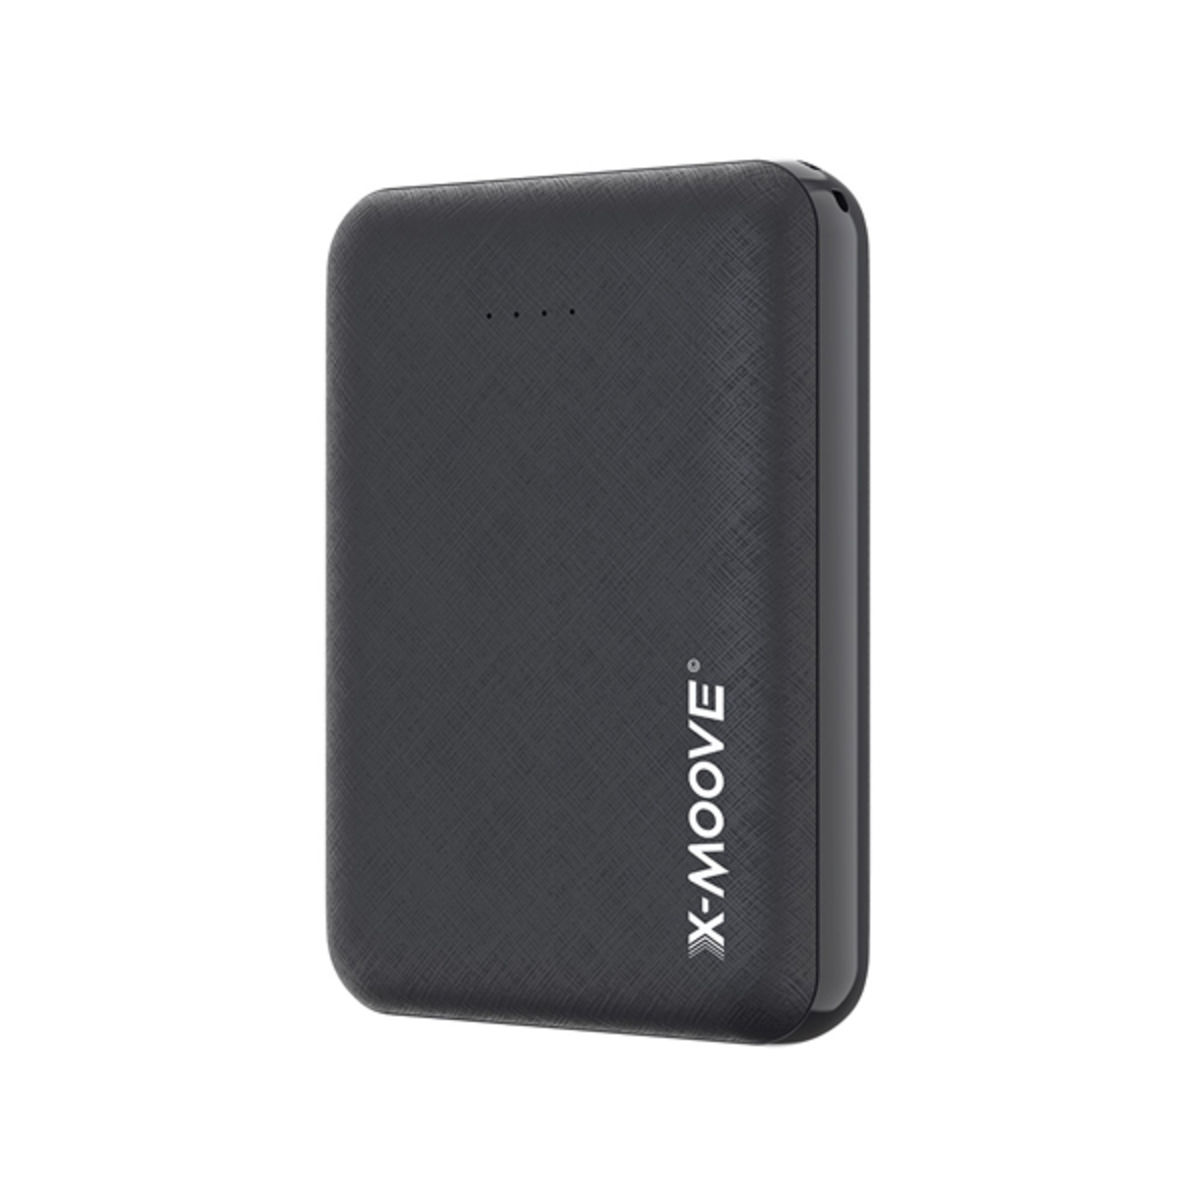 Batería externa X-Moove Sky 10000 mAh - 2 puertos USB